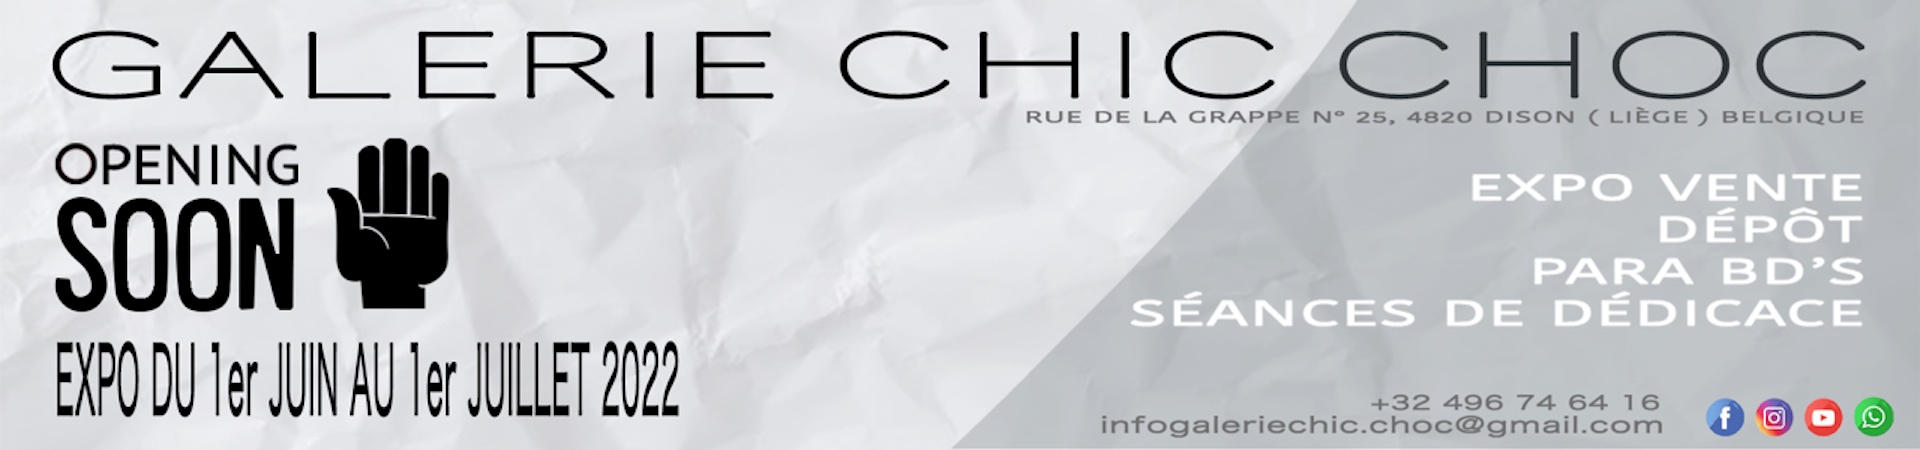 Galerie Chic Choc